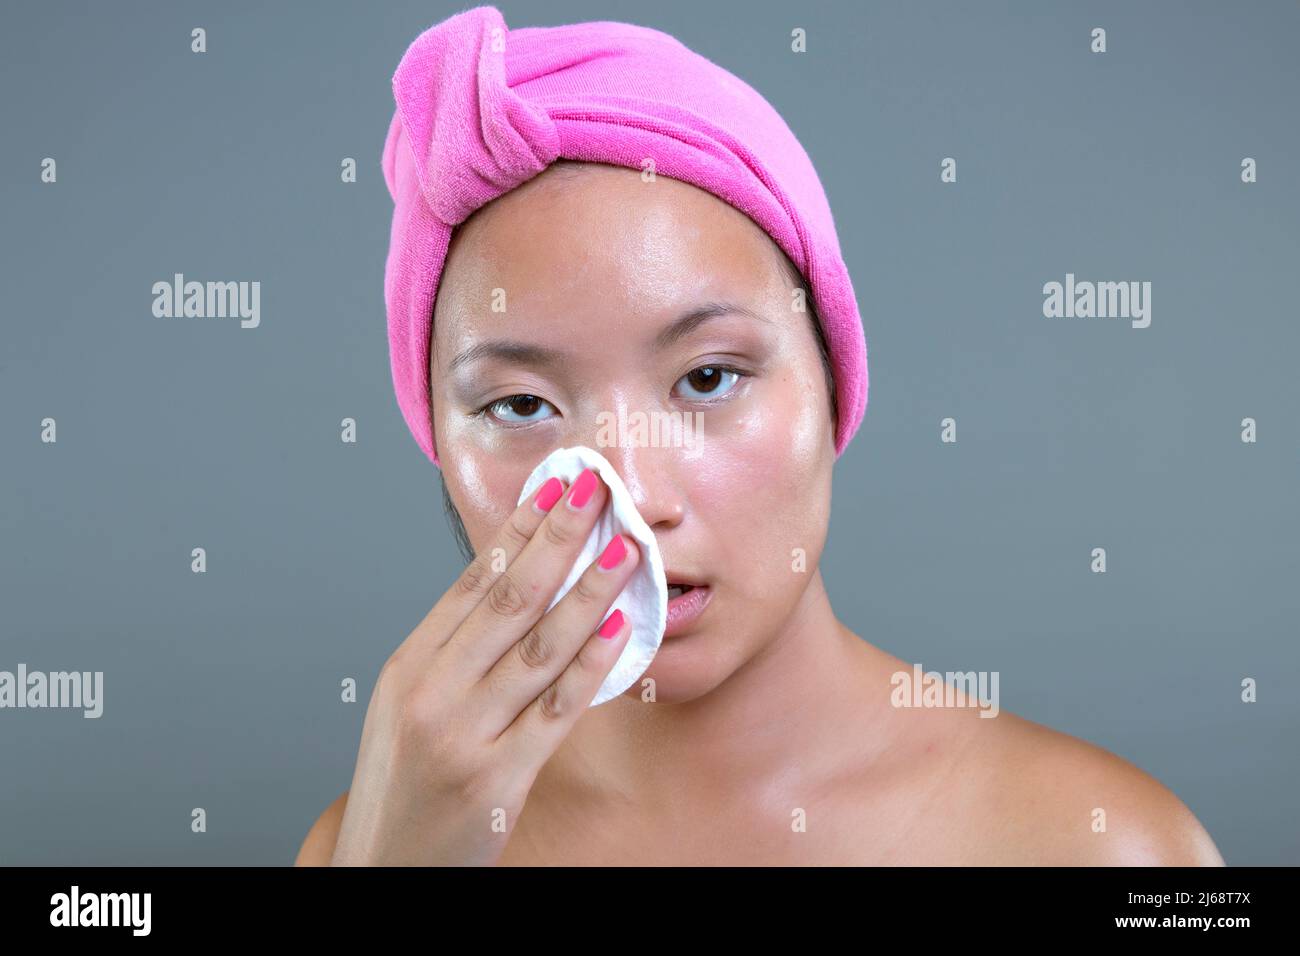 une jeune femme asiatique de l'ethnie nettoie son visage Banque D'Images